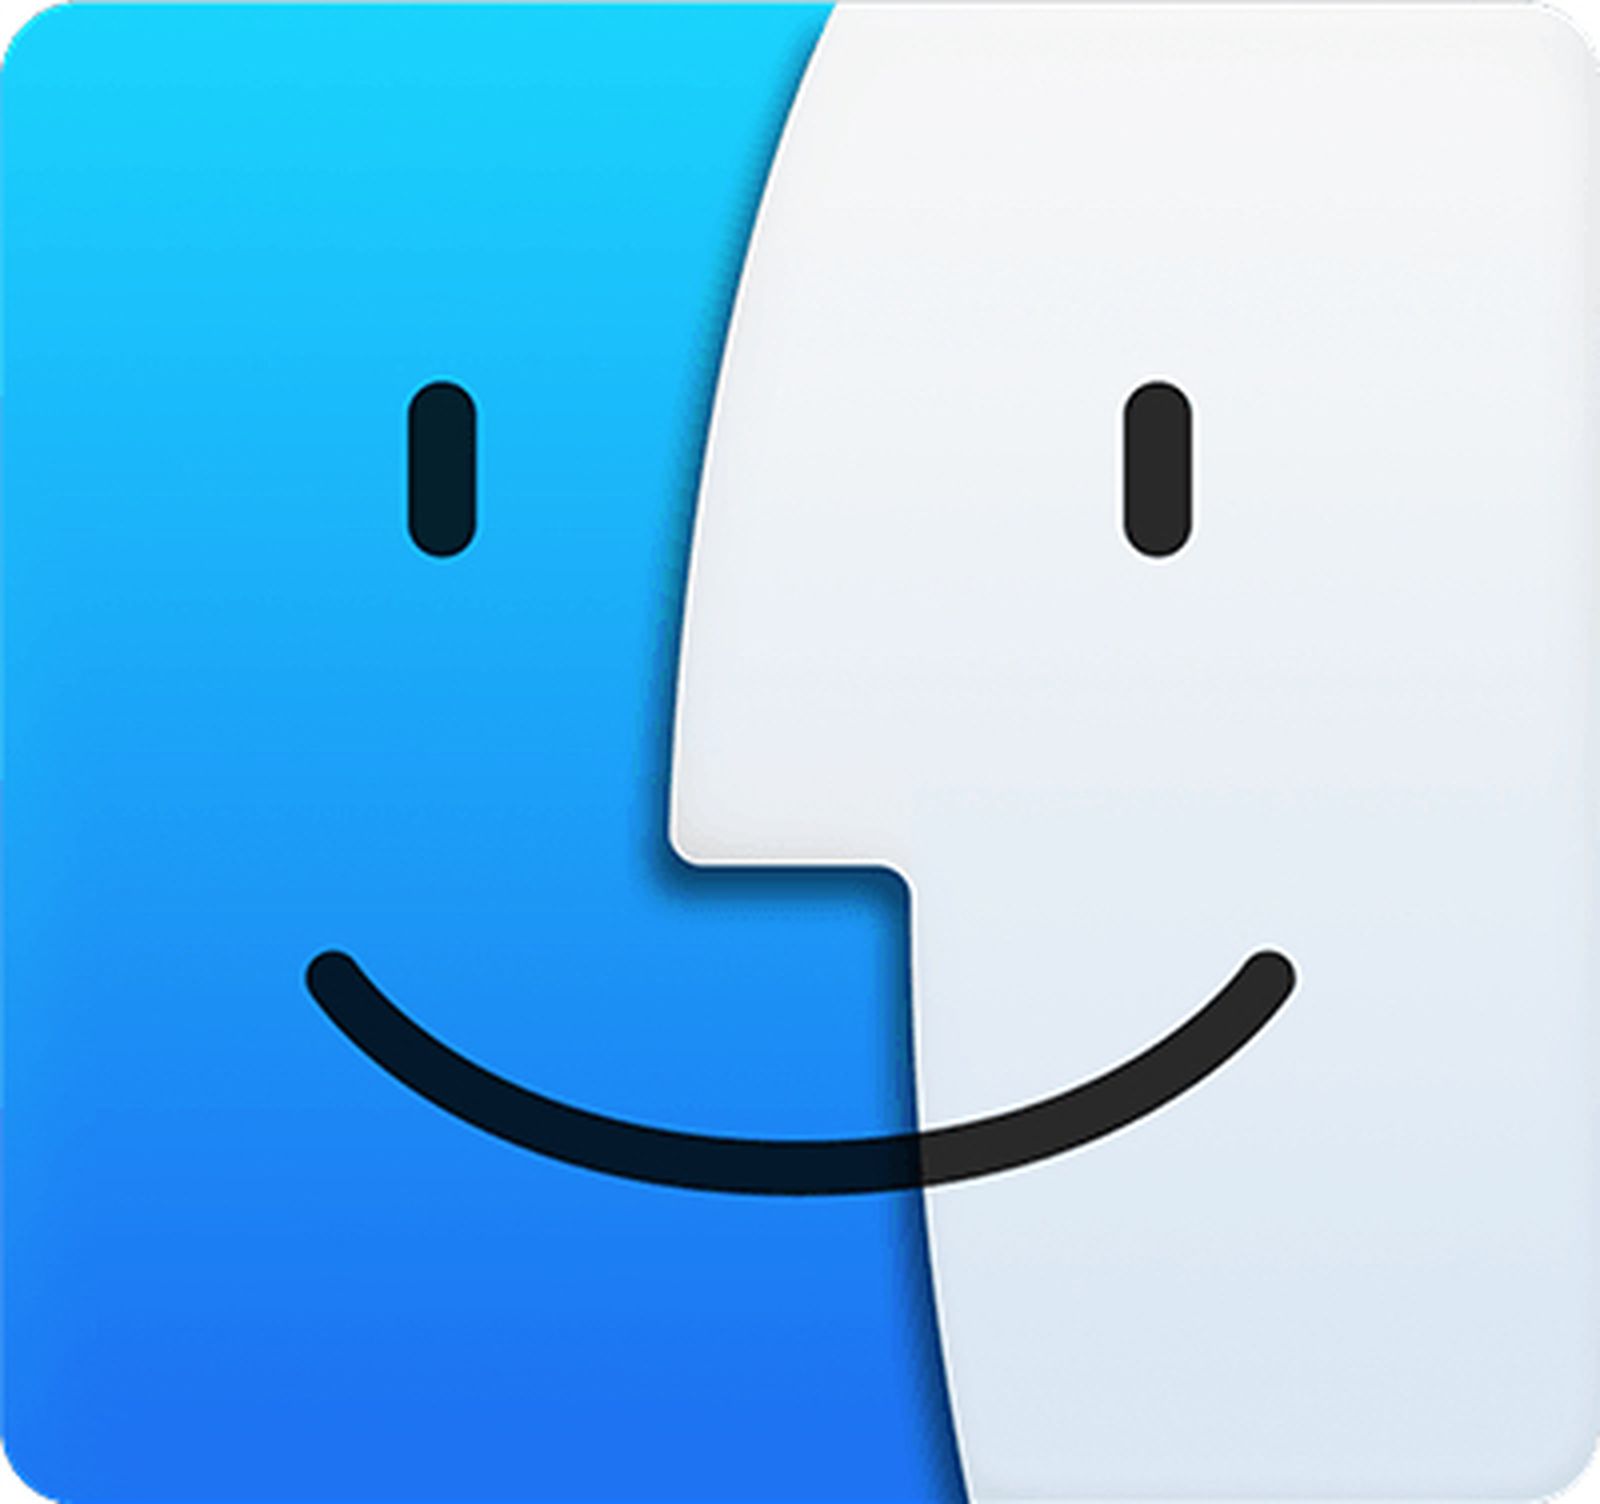 download apple finder for windows 10